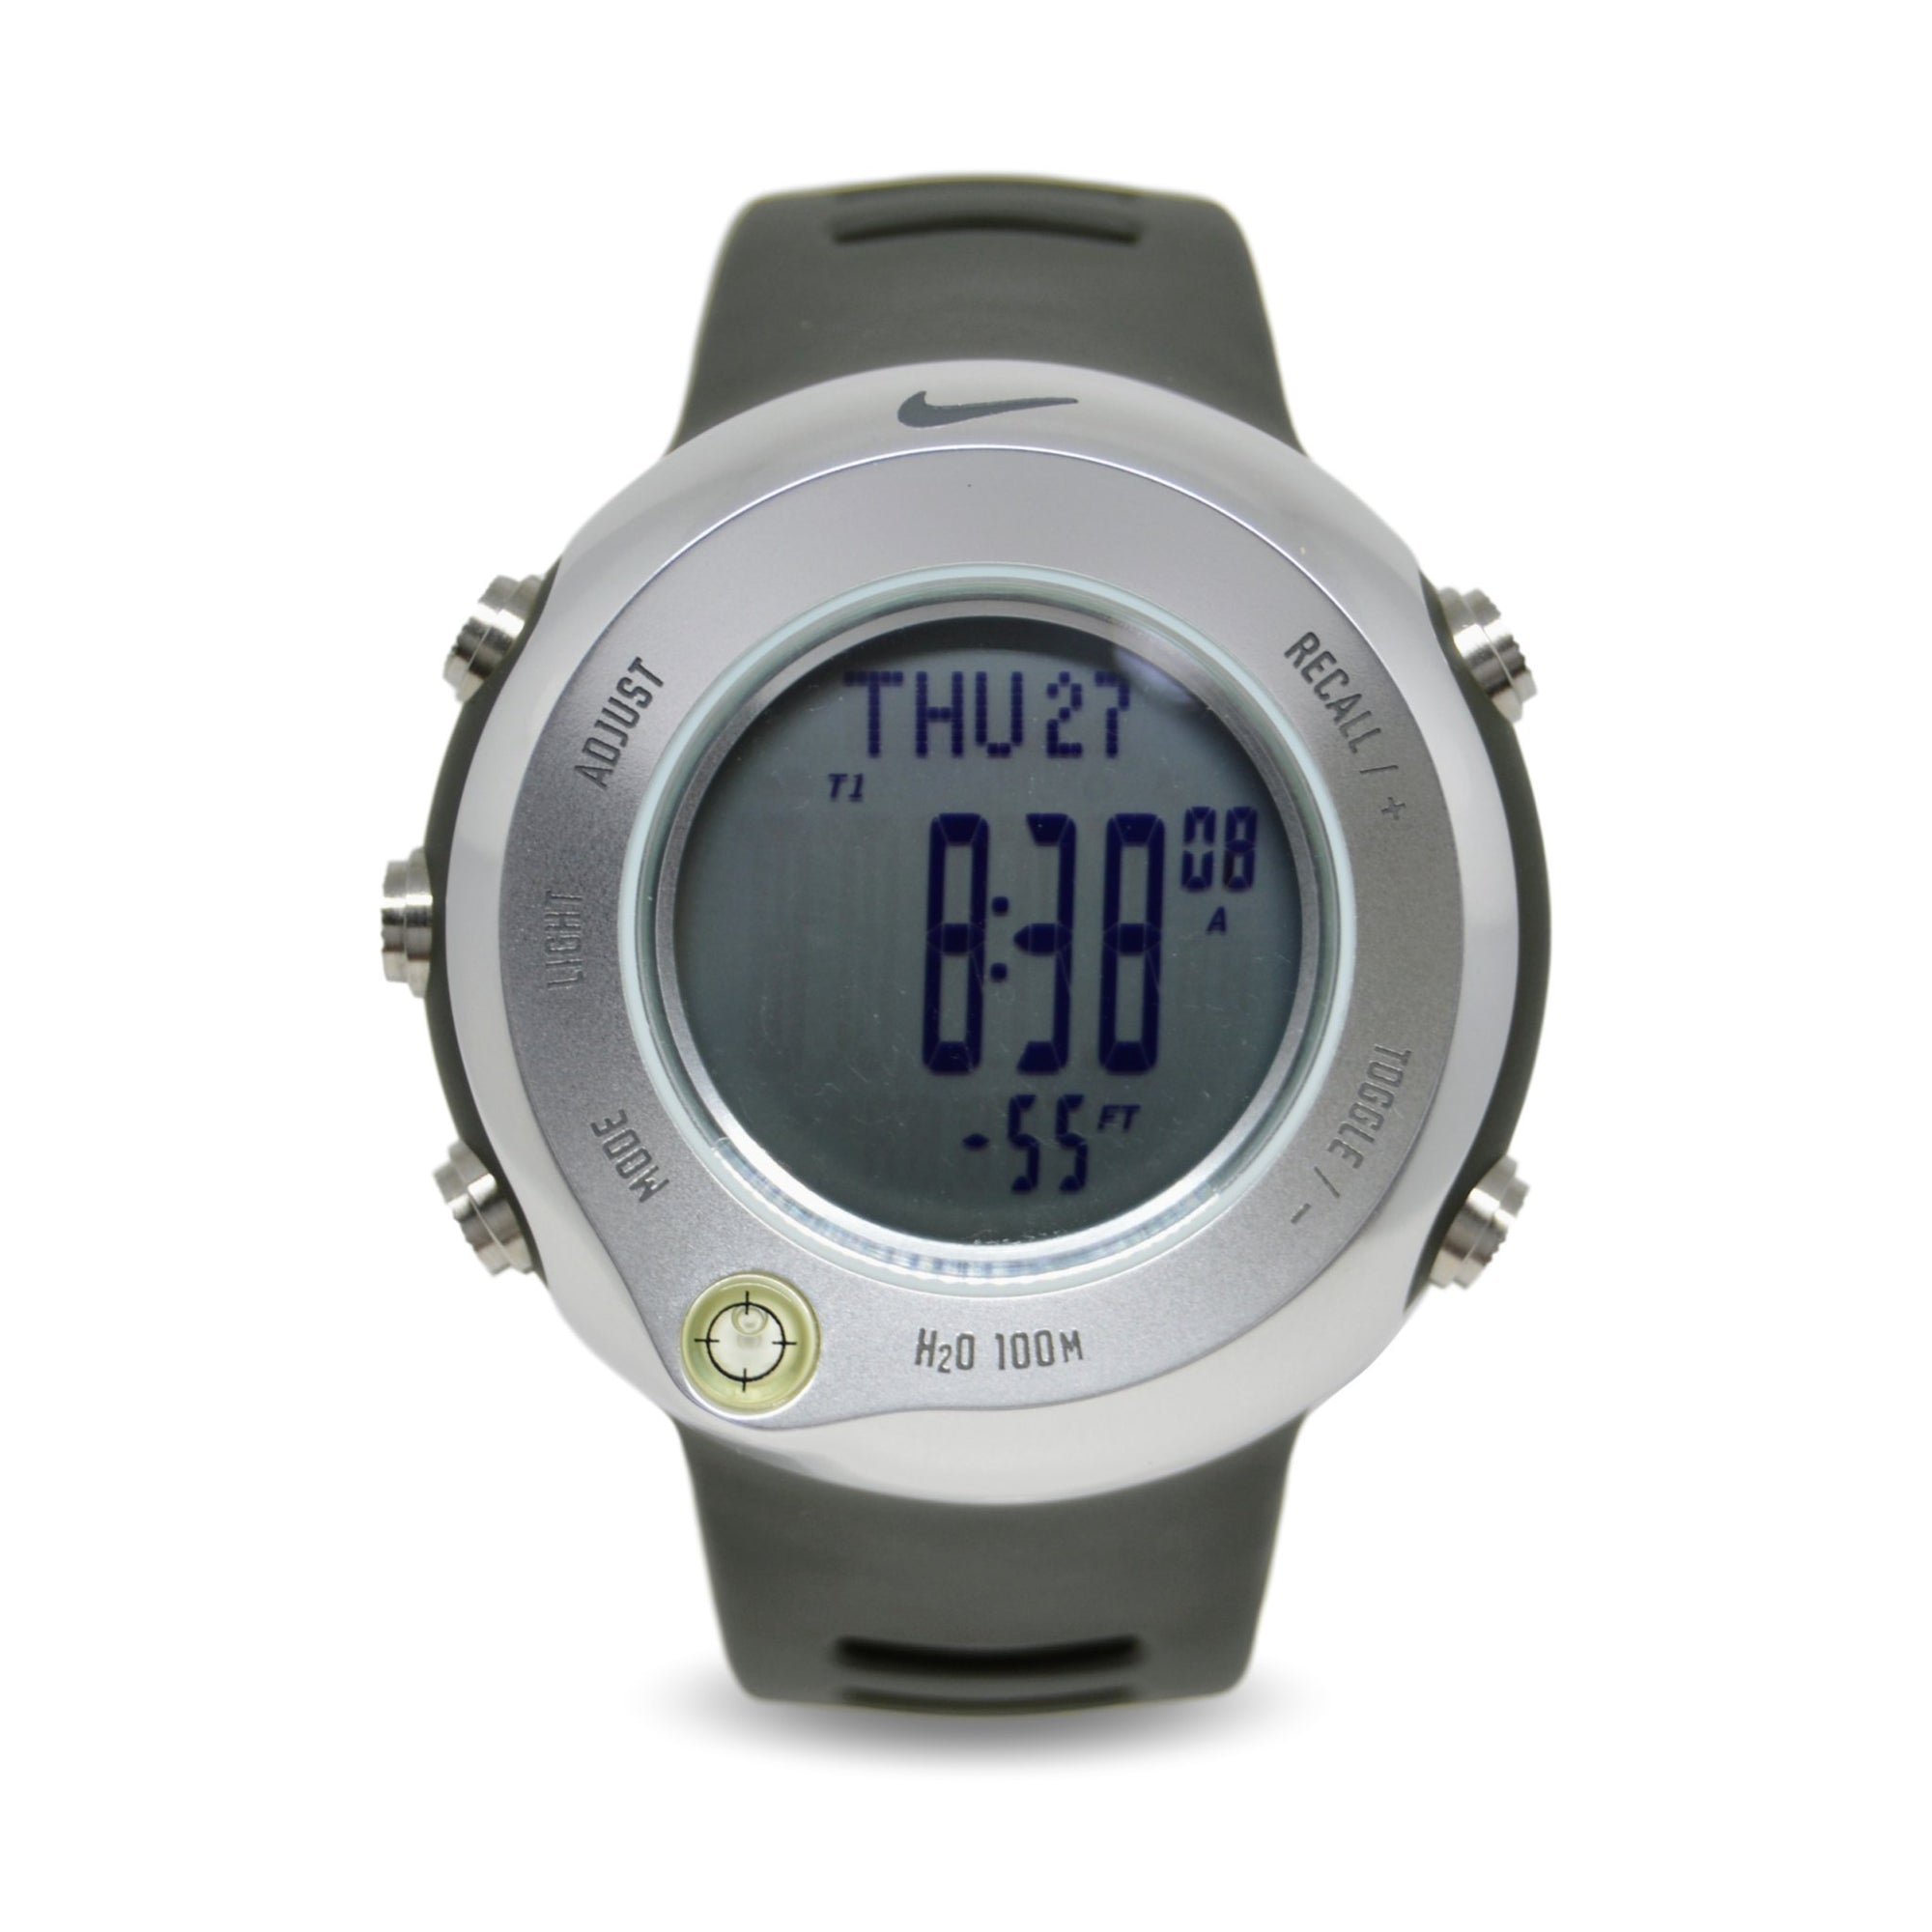 en un día festivo electrodo único Nike Oregon Series Alti-Compass Watch WA0018-013 | Rare Find | - Elevn:59